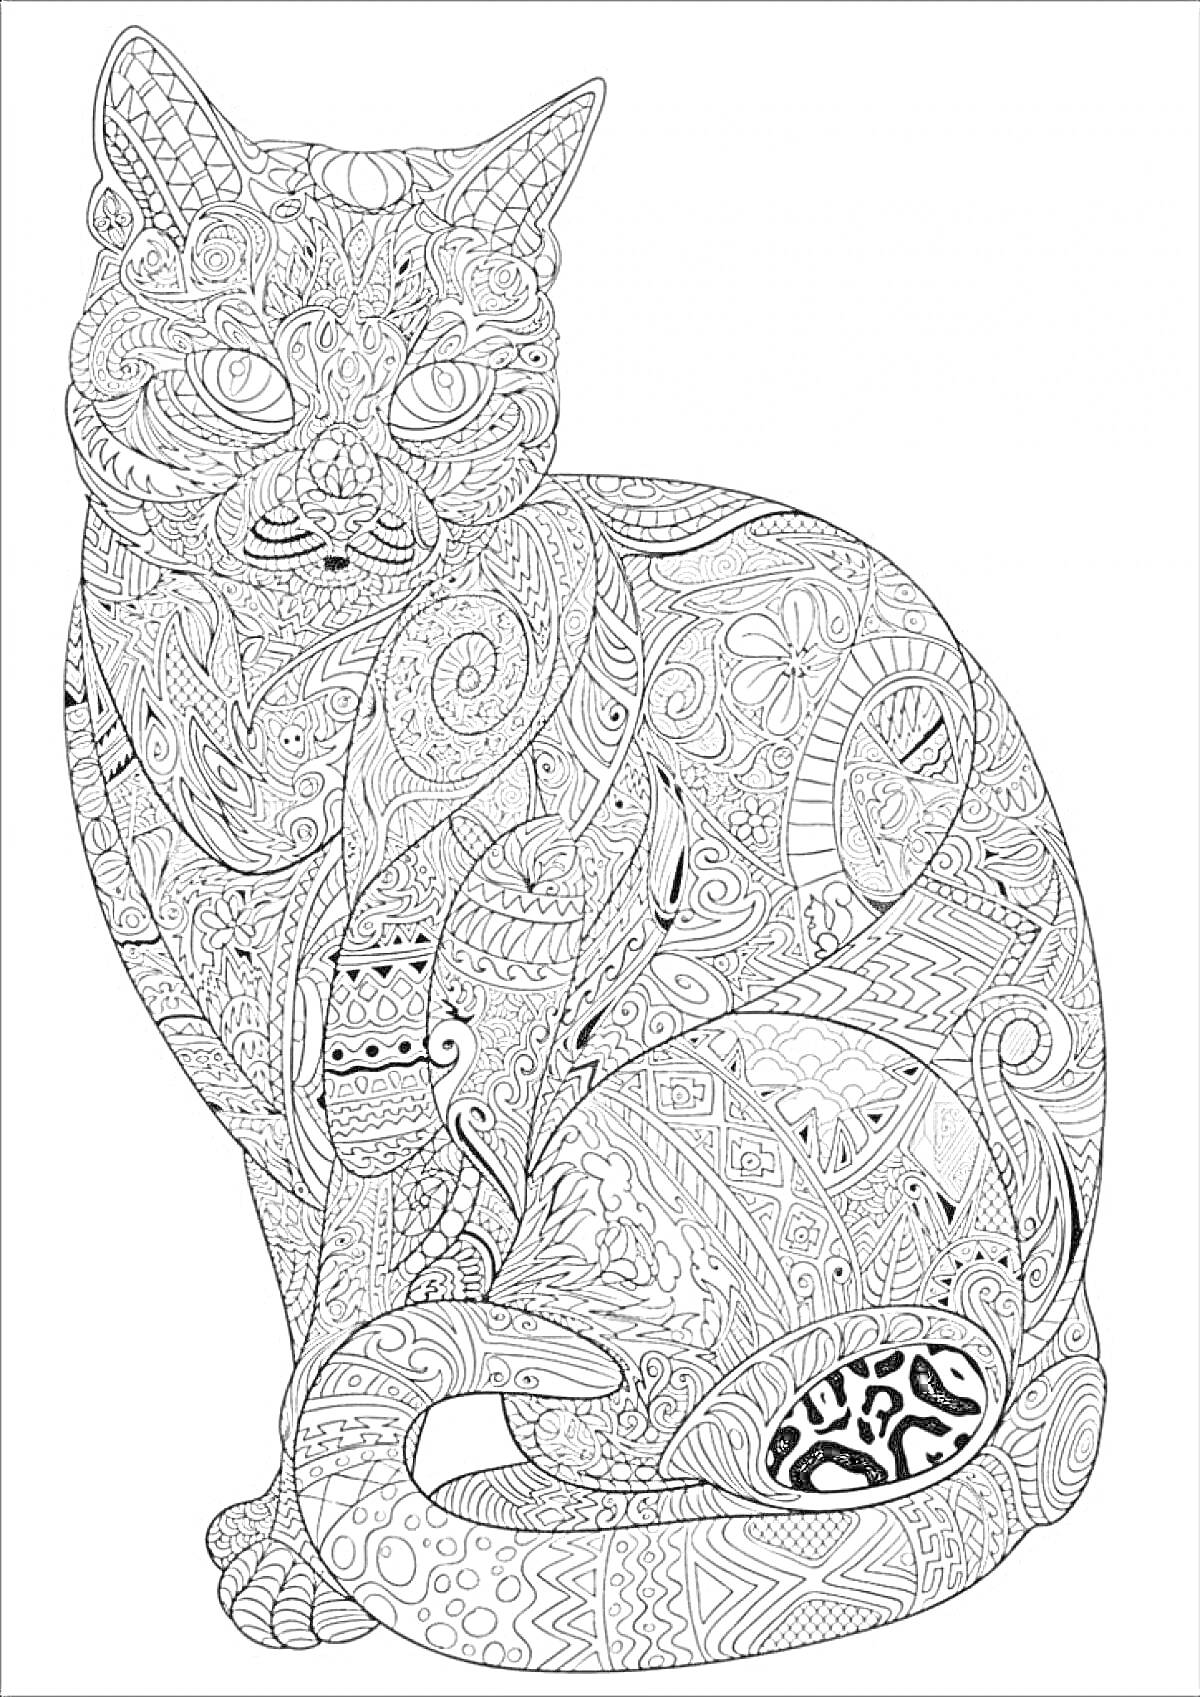 Антистресс раскраска с изображением стилизованной кошки, украшенной сложными узорами, включая цветочные мотивы, геометрические фигуры, абстрактные элементы, завитки и линии.